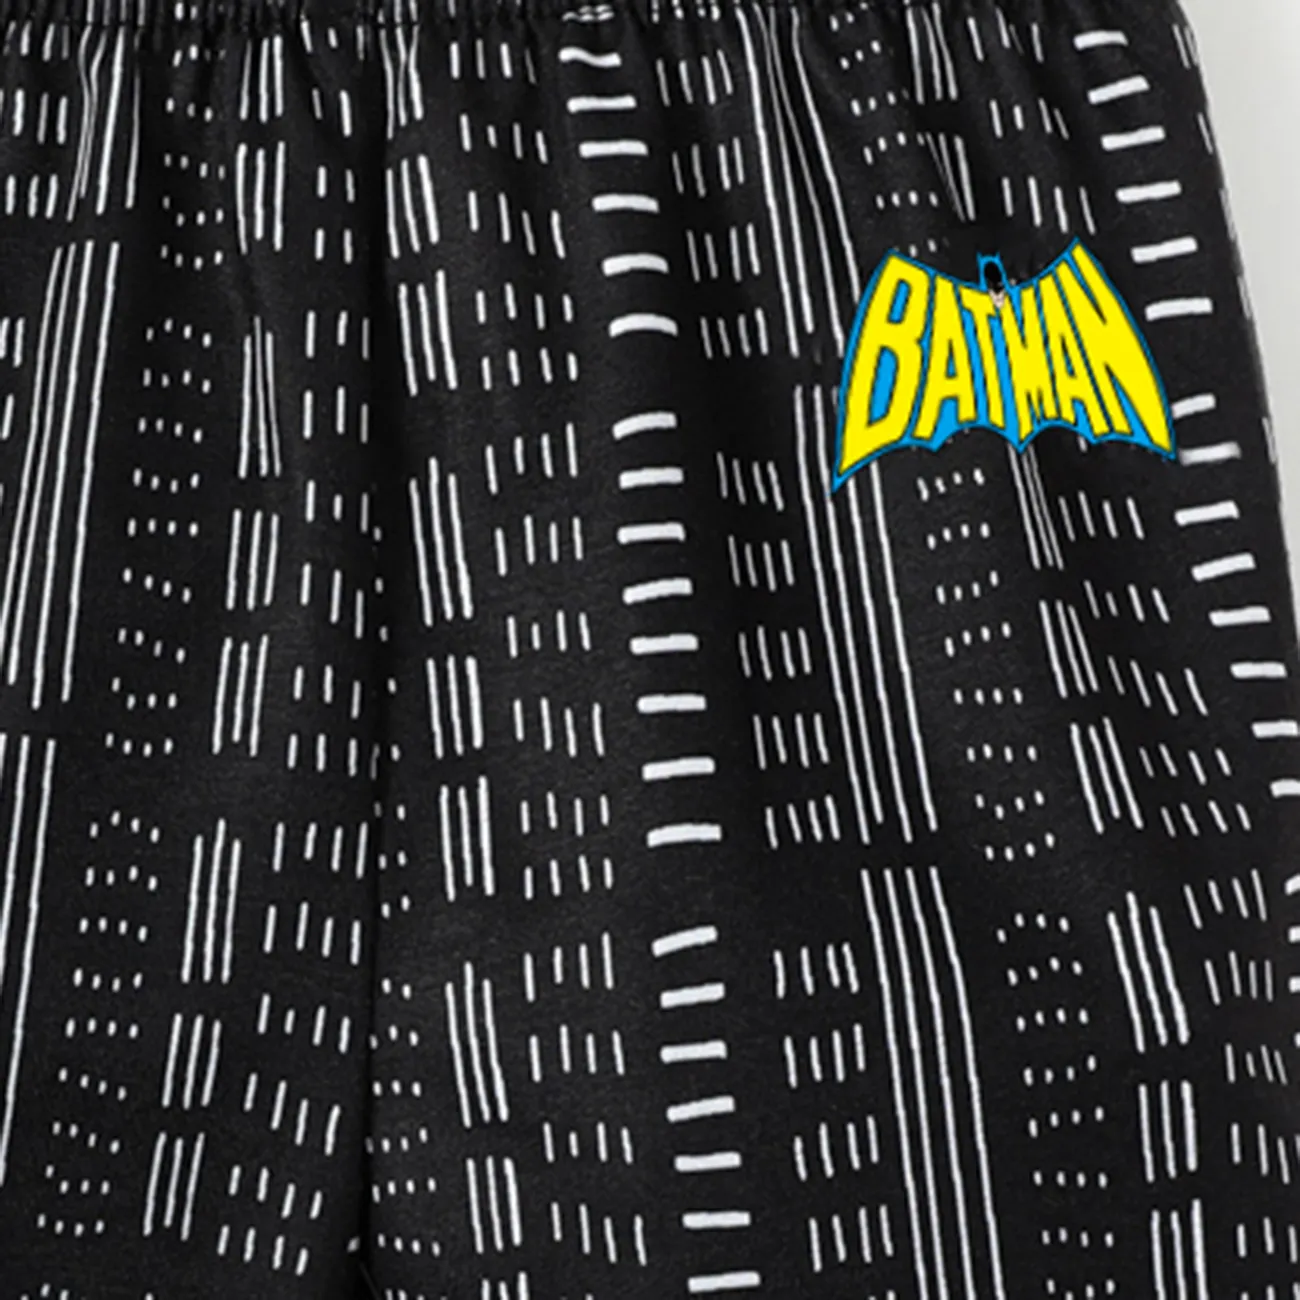 Batman Baby Boy Classic Logo Hooded Sweatshirt and Bodysuit and Pants Black / Gray big image 1